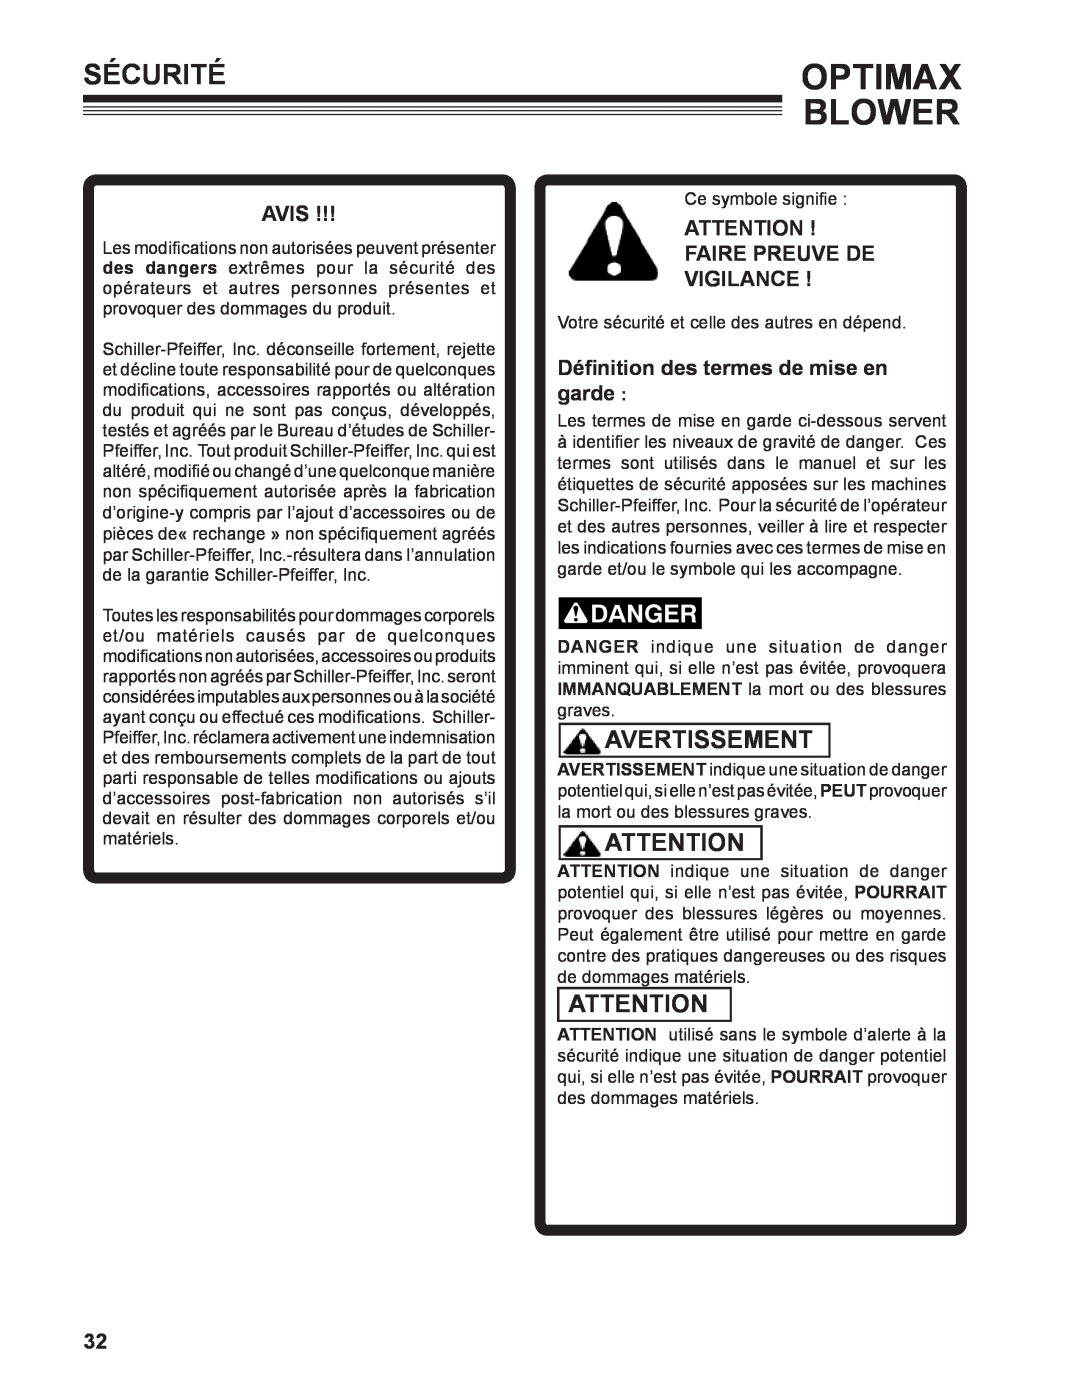 Little Wonder 9131-00-01 technical manual Sécuritéoptimax, Avertissement, Avis, Faire Preuve De Vigilance , Blower 